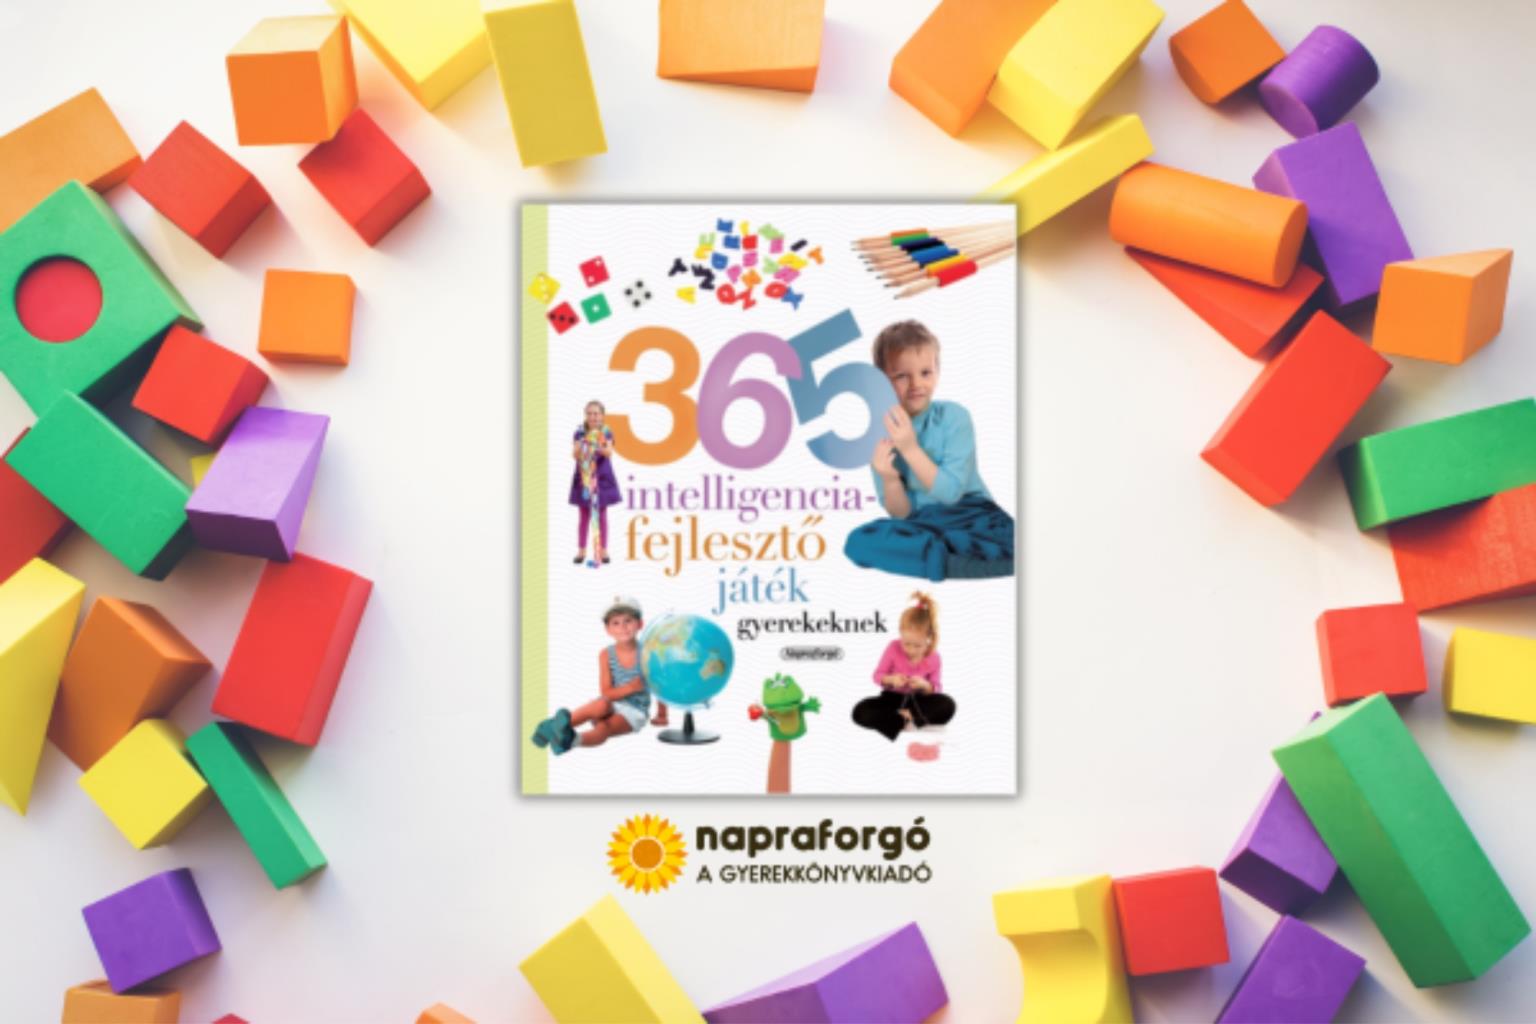 Neveljünk egészséges gyereket - 365 intelligenciafejlesztő játék gyerekeknek